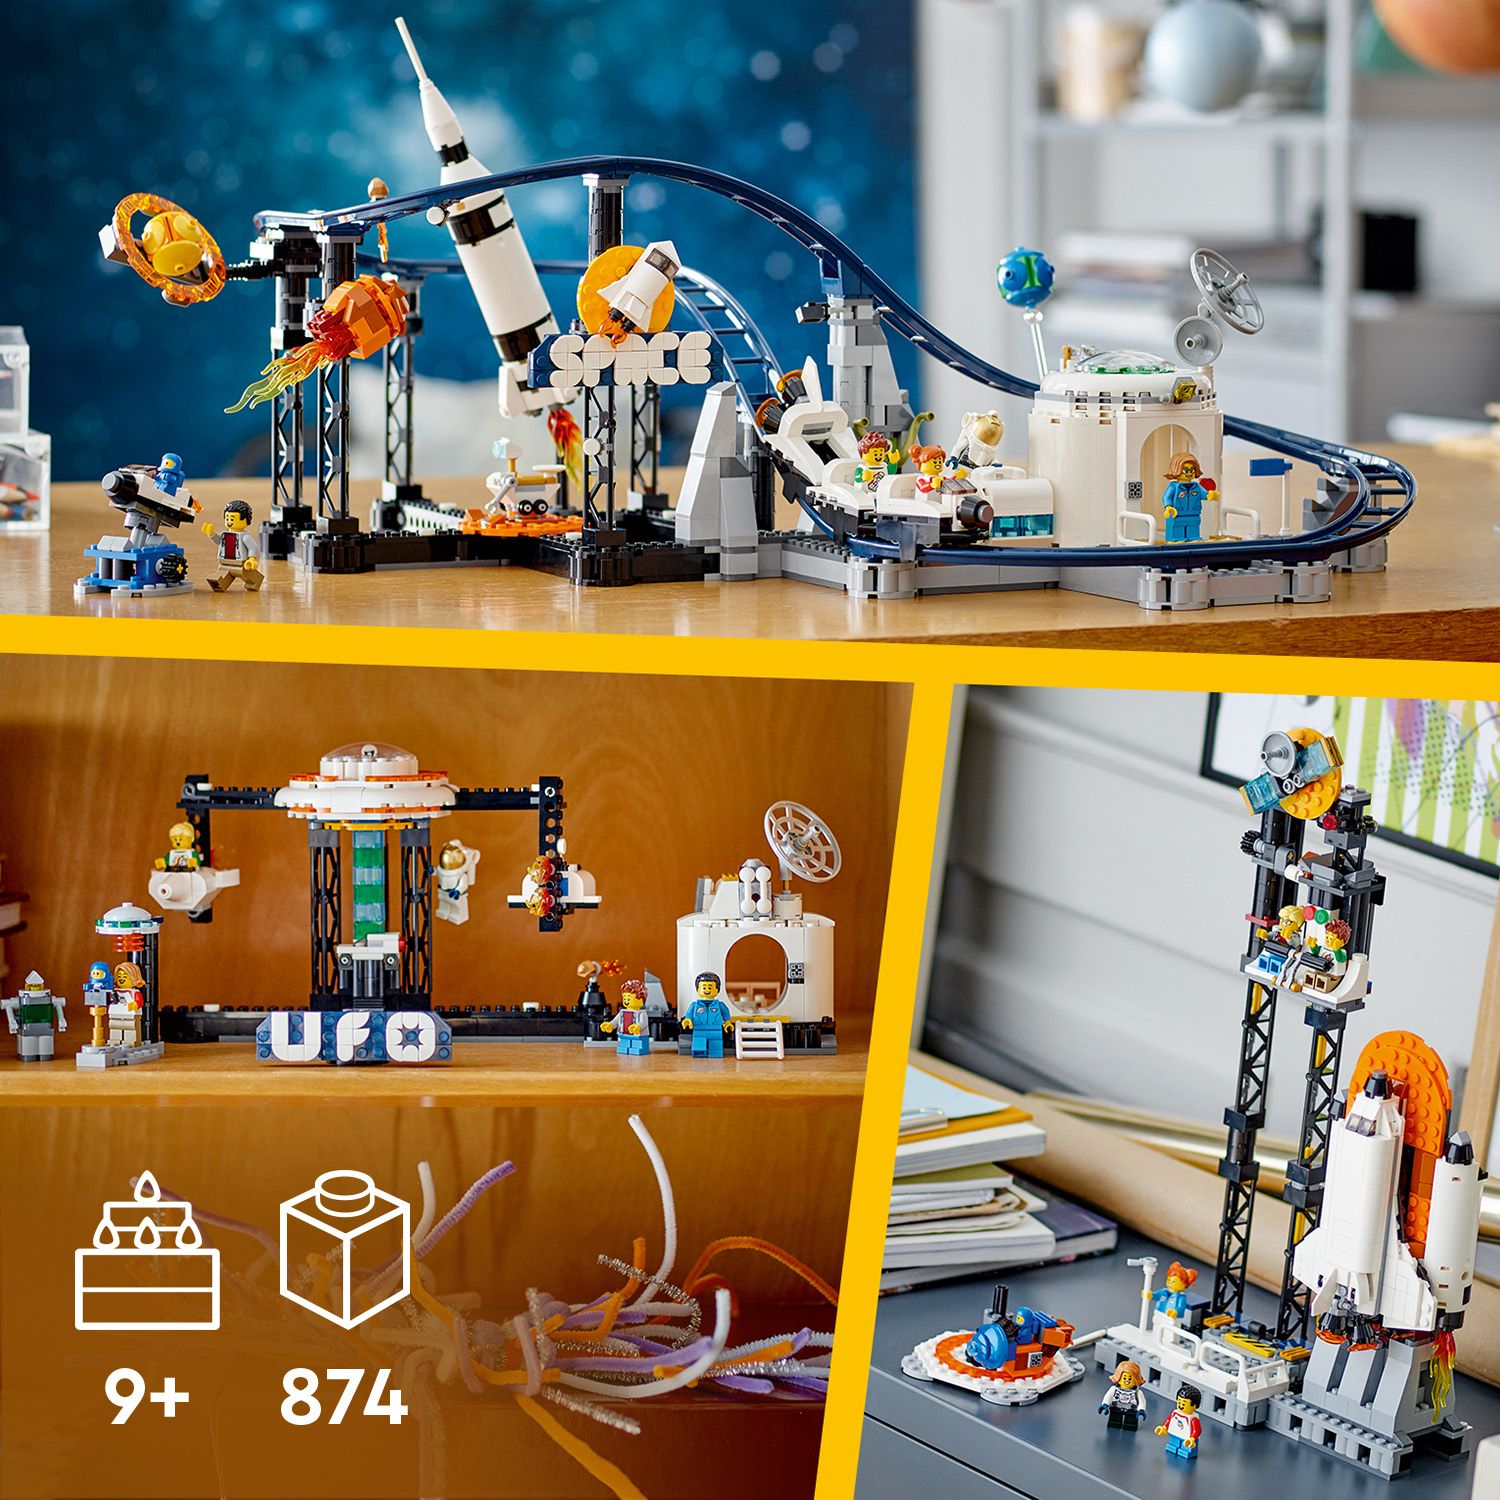 Dárek pro fandy LEGO® k hraní i na výstavku